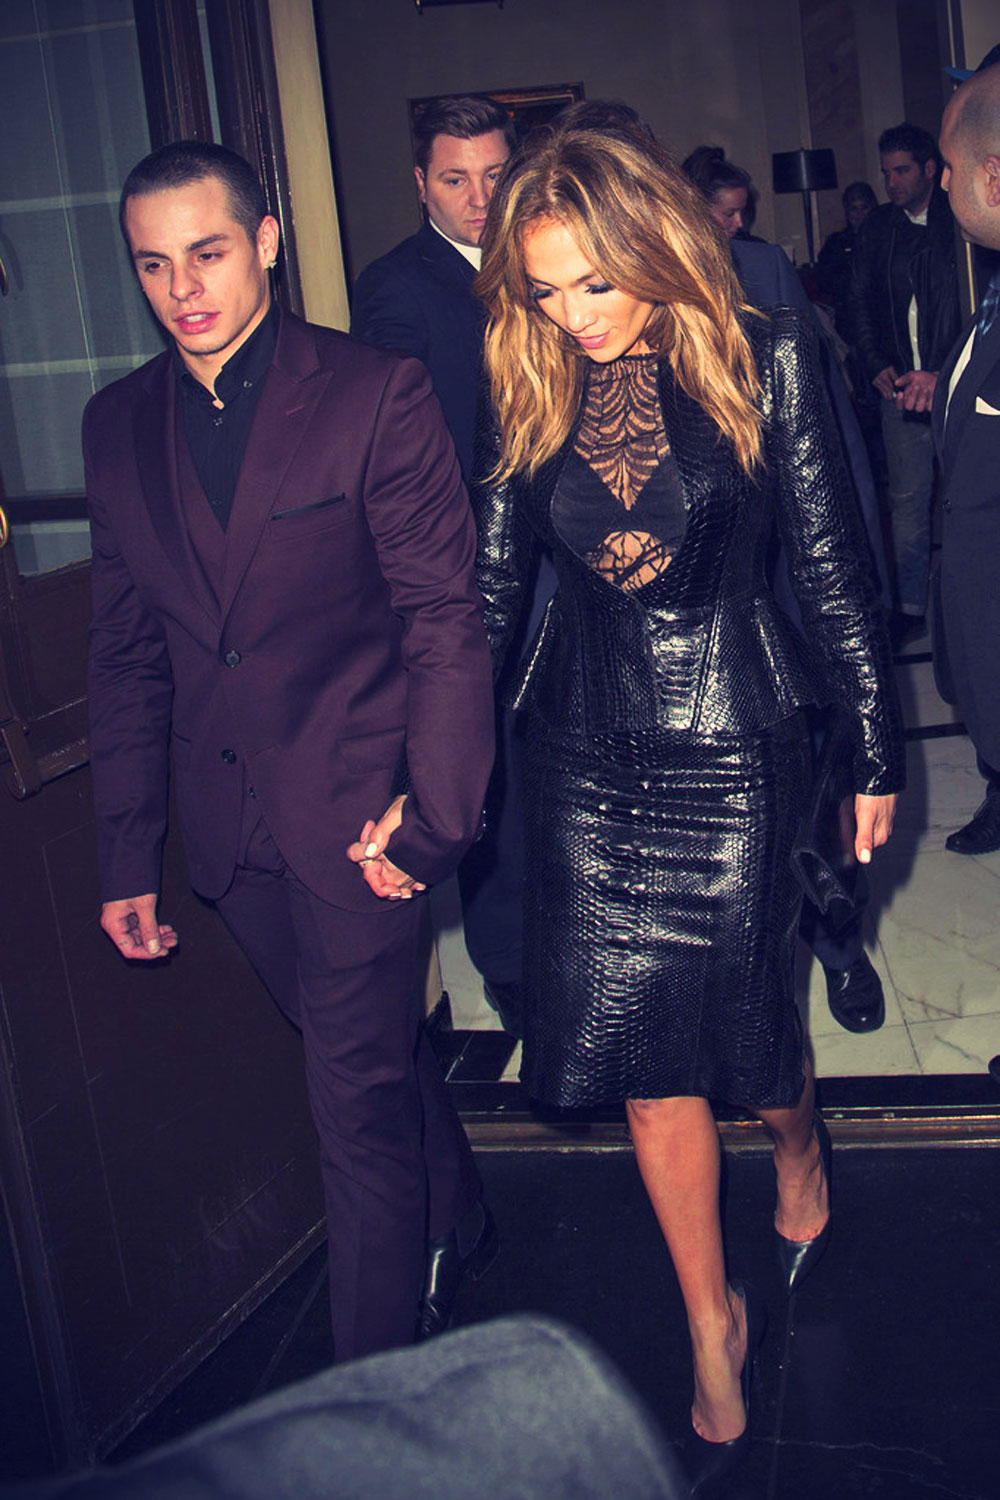 Jennifer Lopez seen with beau Casper Smart leaving her hotel